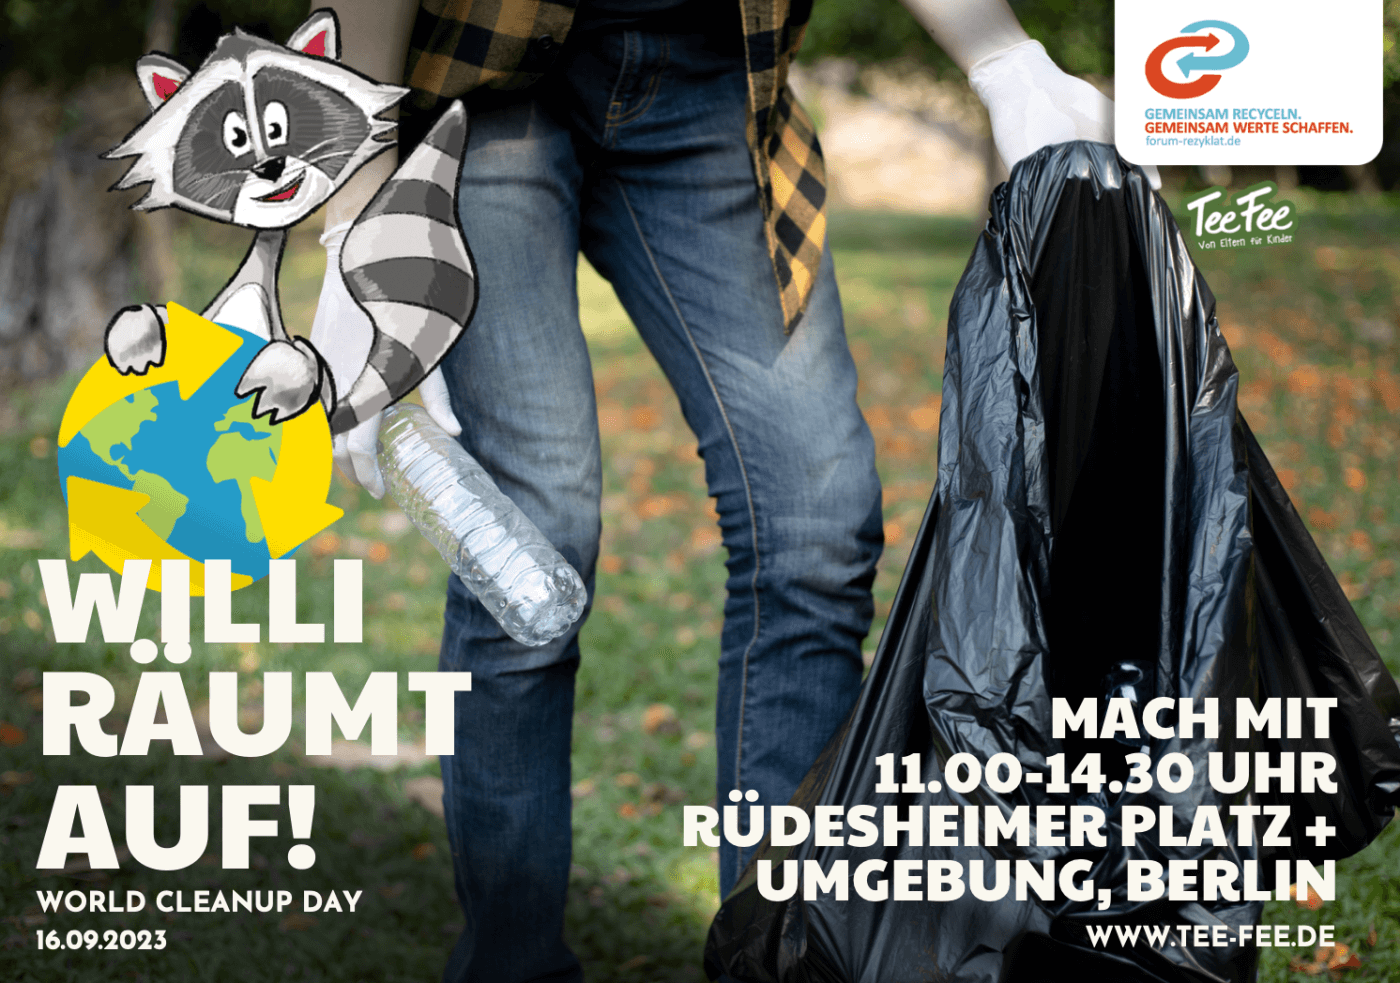 World Cleanup Day 2023 in Berlin! Für eine saubere Zukunft